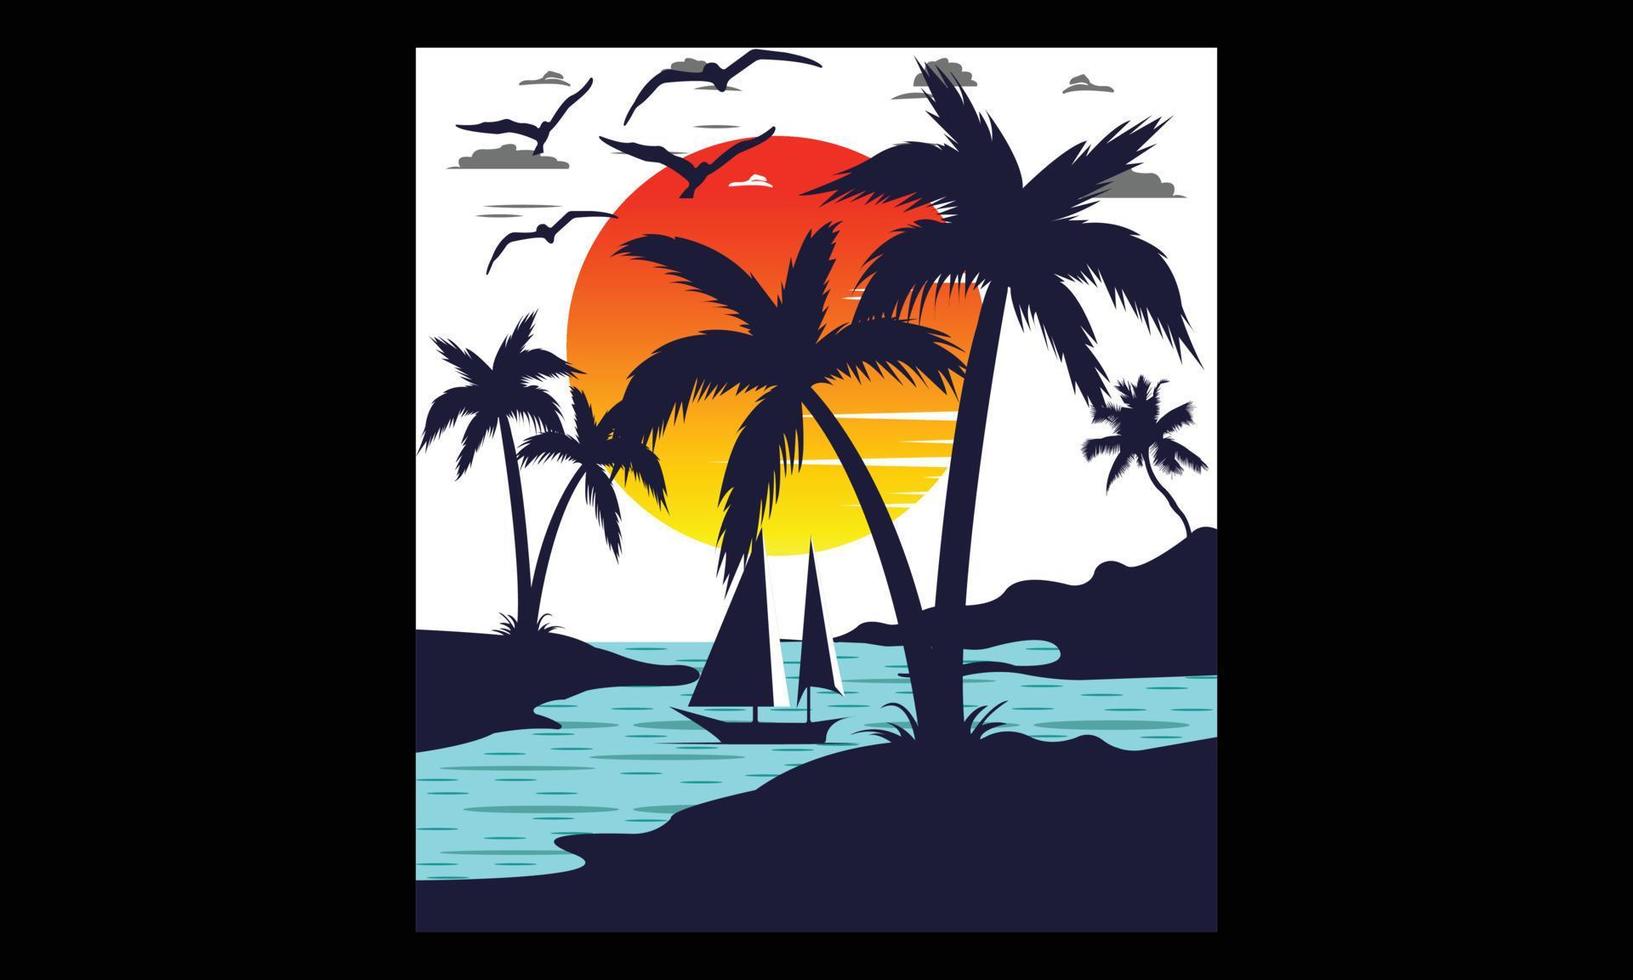 vecteur de coucher de soleil d'été naturel de l'île et conception d'illustrations. arrière-plan avec illustration numérique des enfants créatifs du paysage naturel et illustration vectorielle de thème d'été.